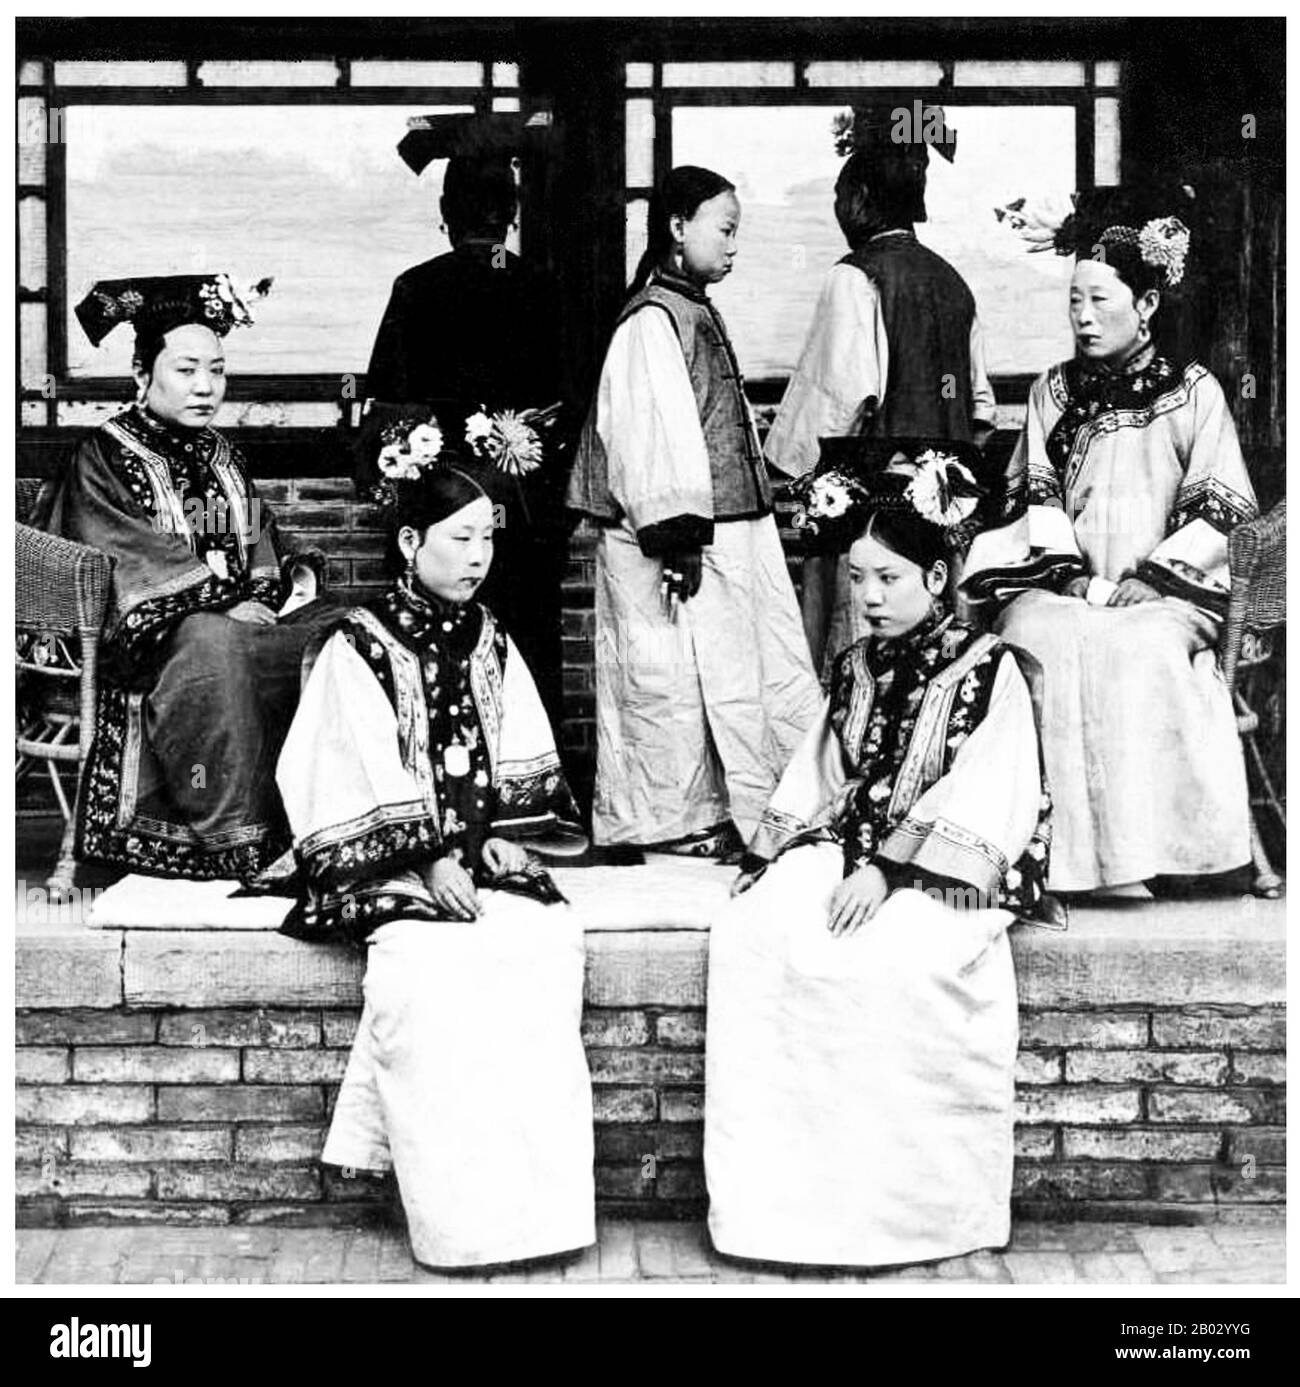 Le donne manchu della Città Proibita o Gugong a Pechino posano per una fotografia c. 1910 negli ultimi giorni della Dinastia Manchu Qing (1644-1911). Indossano abiti elaborati e costosi. Le loro facce sono sbiancate con polvere, e il loro rossetto è applicato in una stretta fascia attraverso il centro delle loro labbra seguendo la moda del tempo. Foto Stock